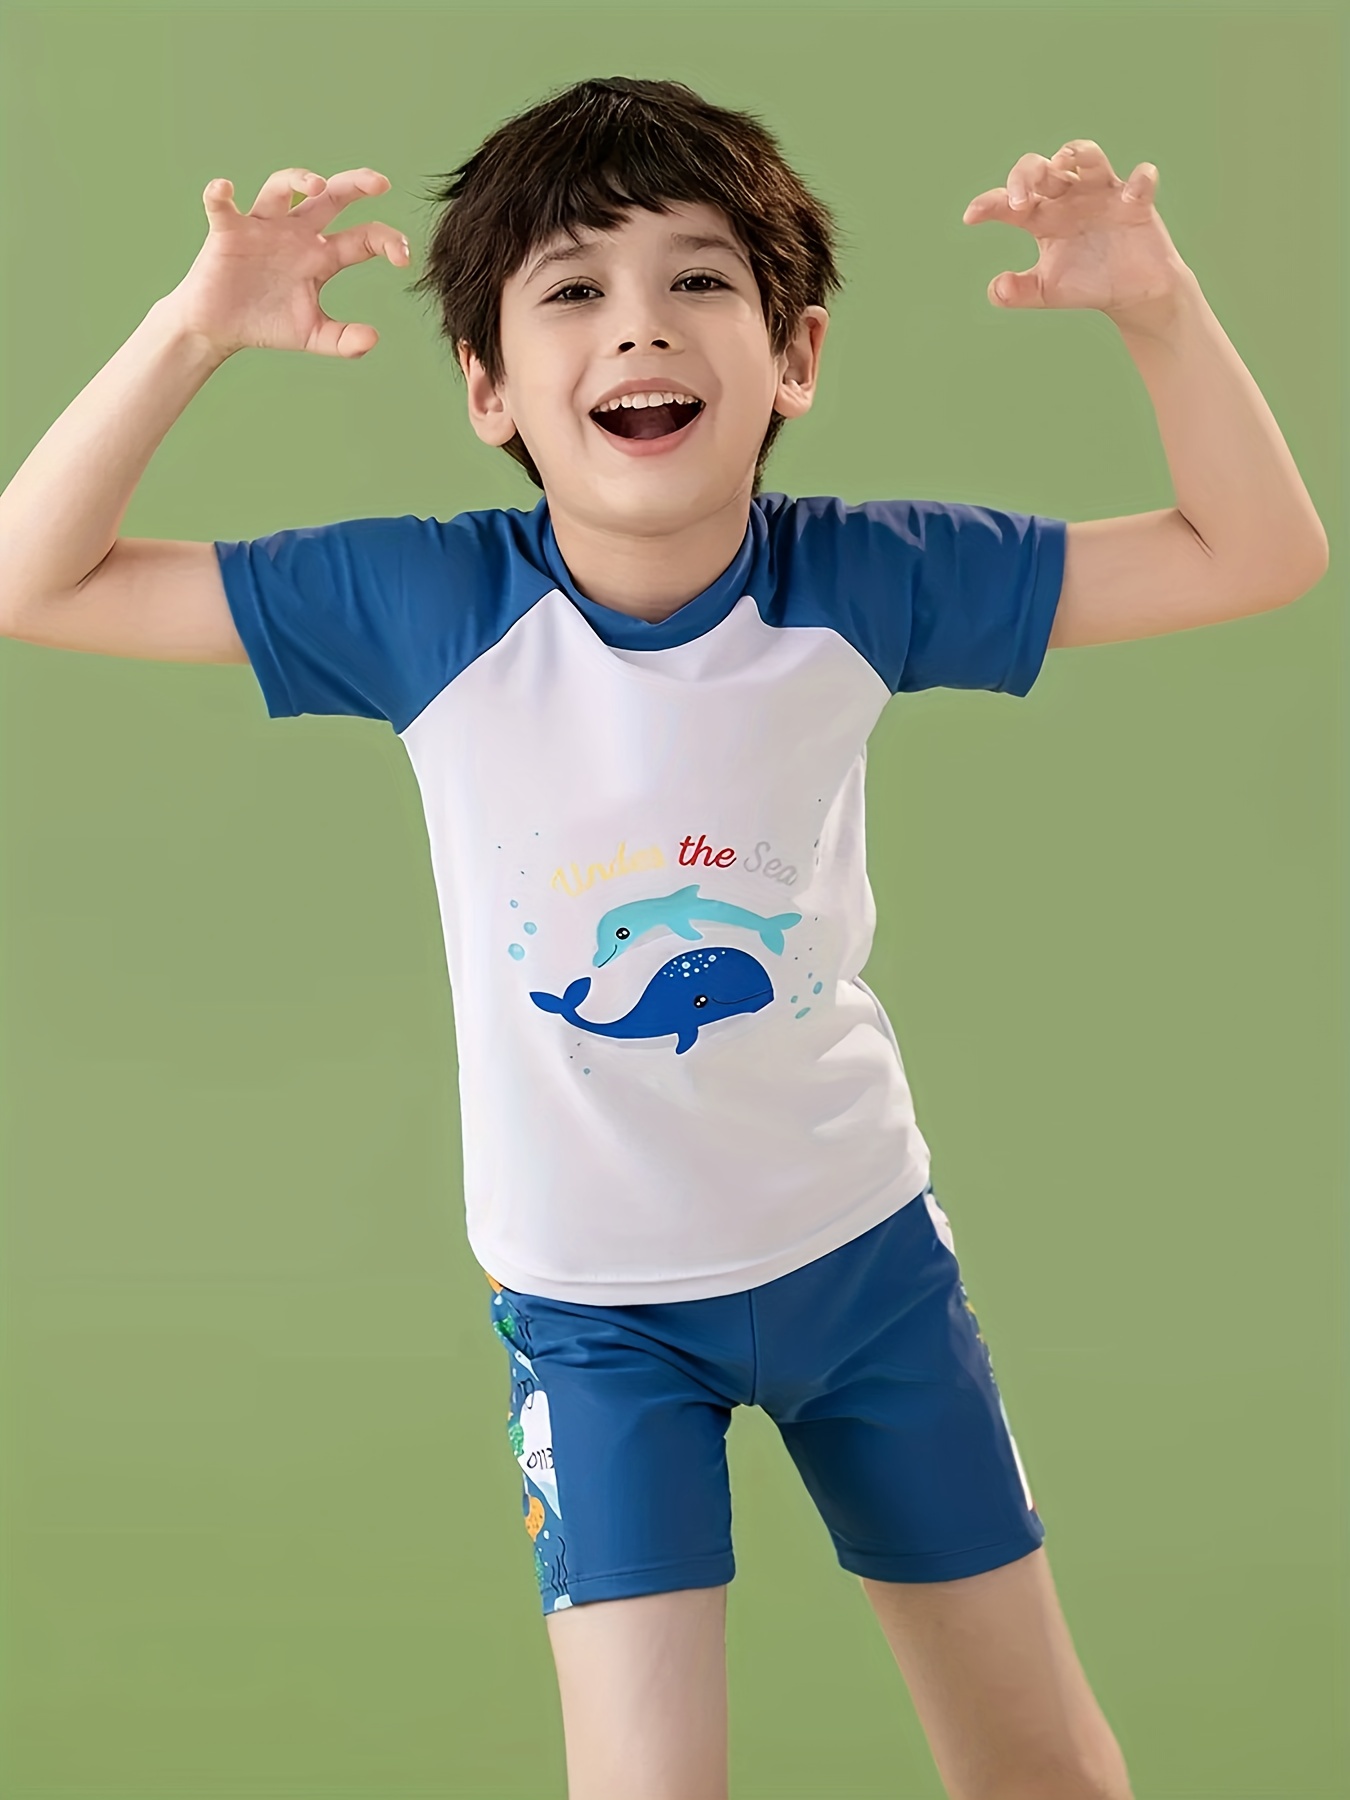 One-Piece Boys Kids Swimming Suit Blue Short Sleeve Swimwear Shark Beach  Wear